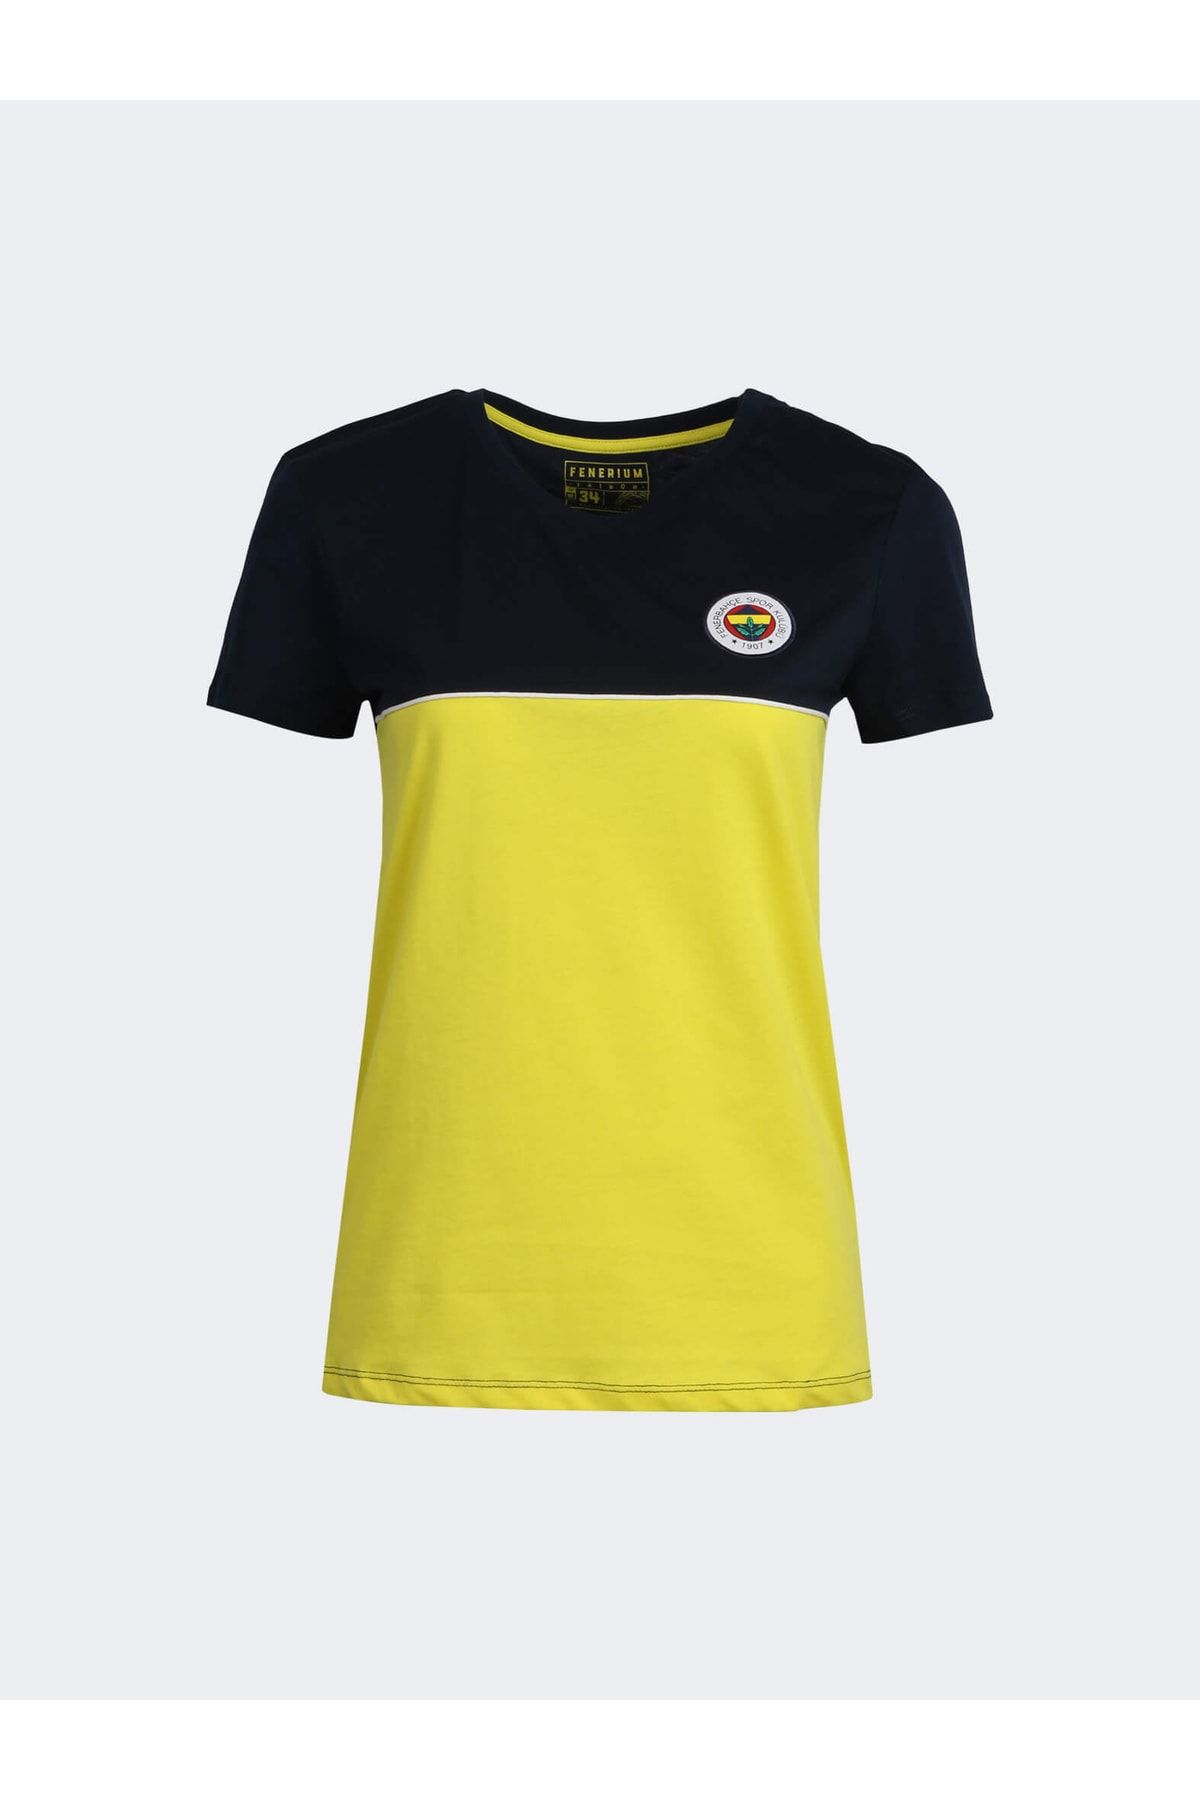 Fenerbahçe Kadın Tribün Basıc Tshırt